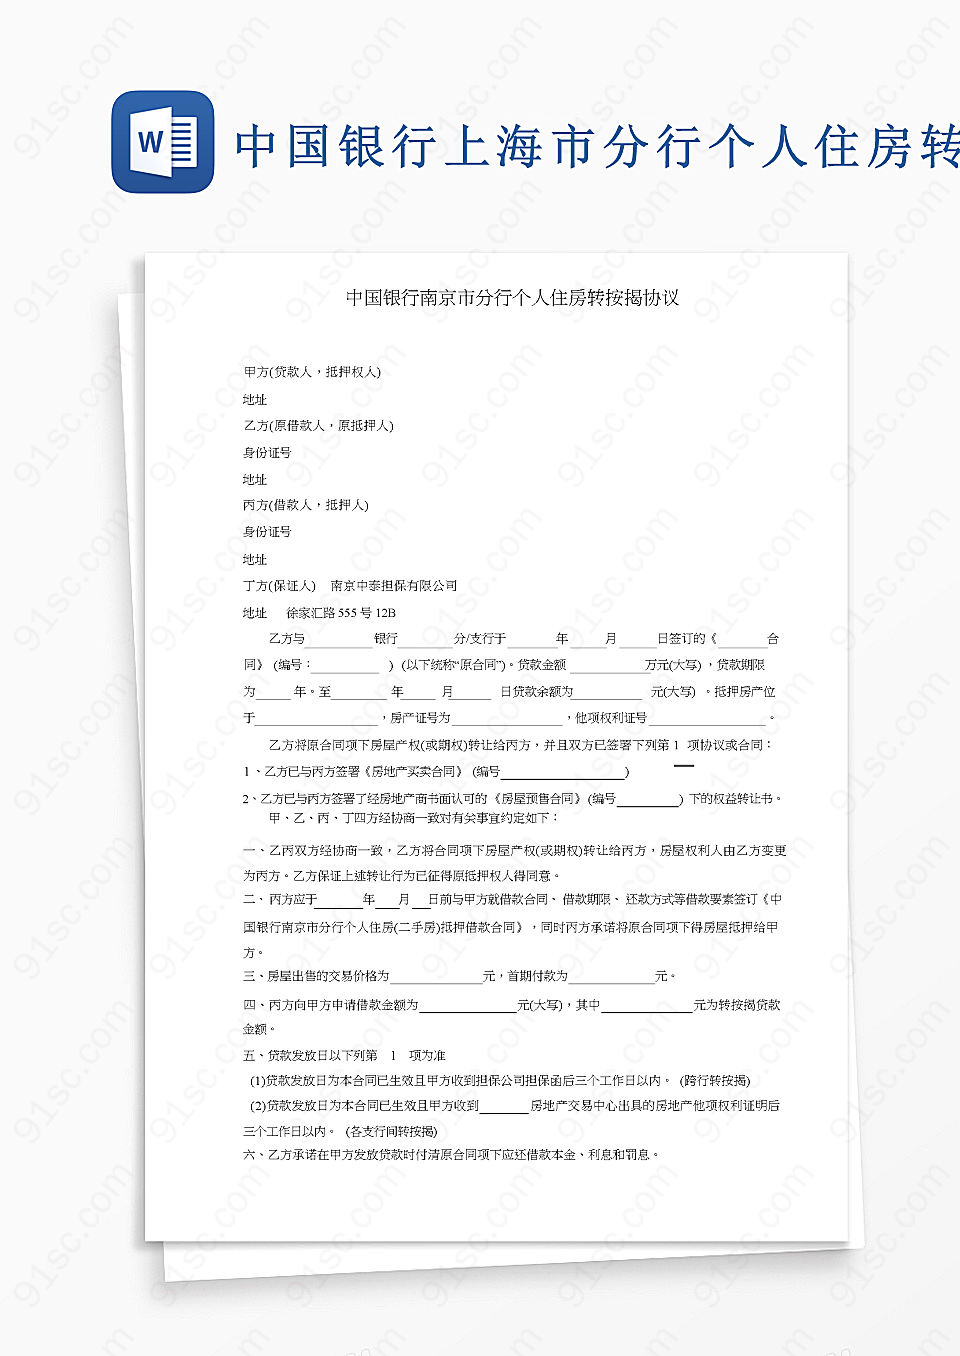 中国银行上海市分行个人住房贷款转换协议其他合同合同协议Word模板下载